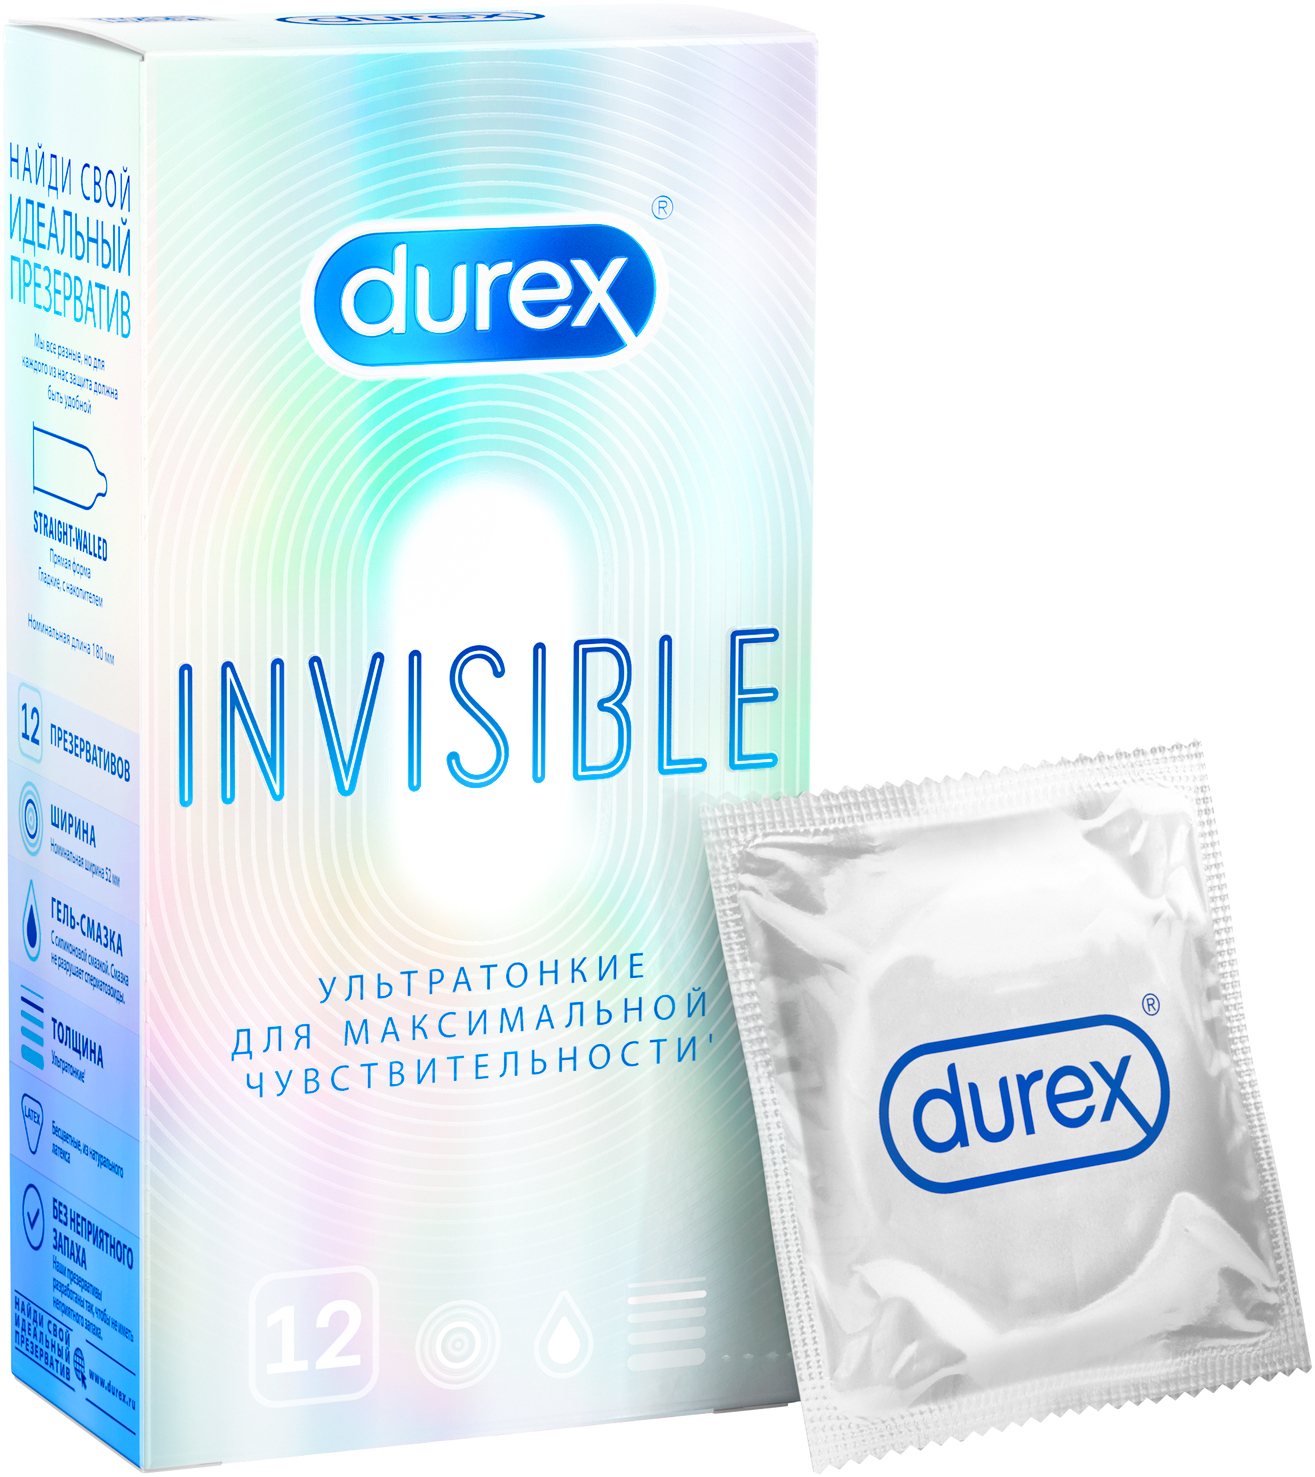 Как выбрать презерватив, правильно подобрать размер, вид, материал и стоимость